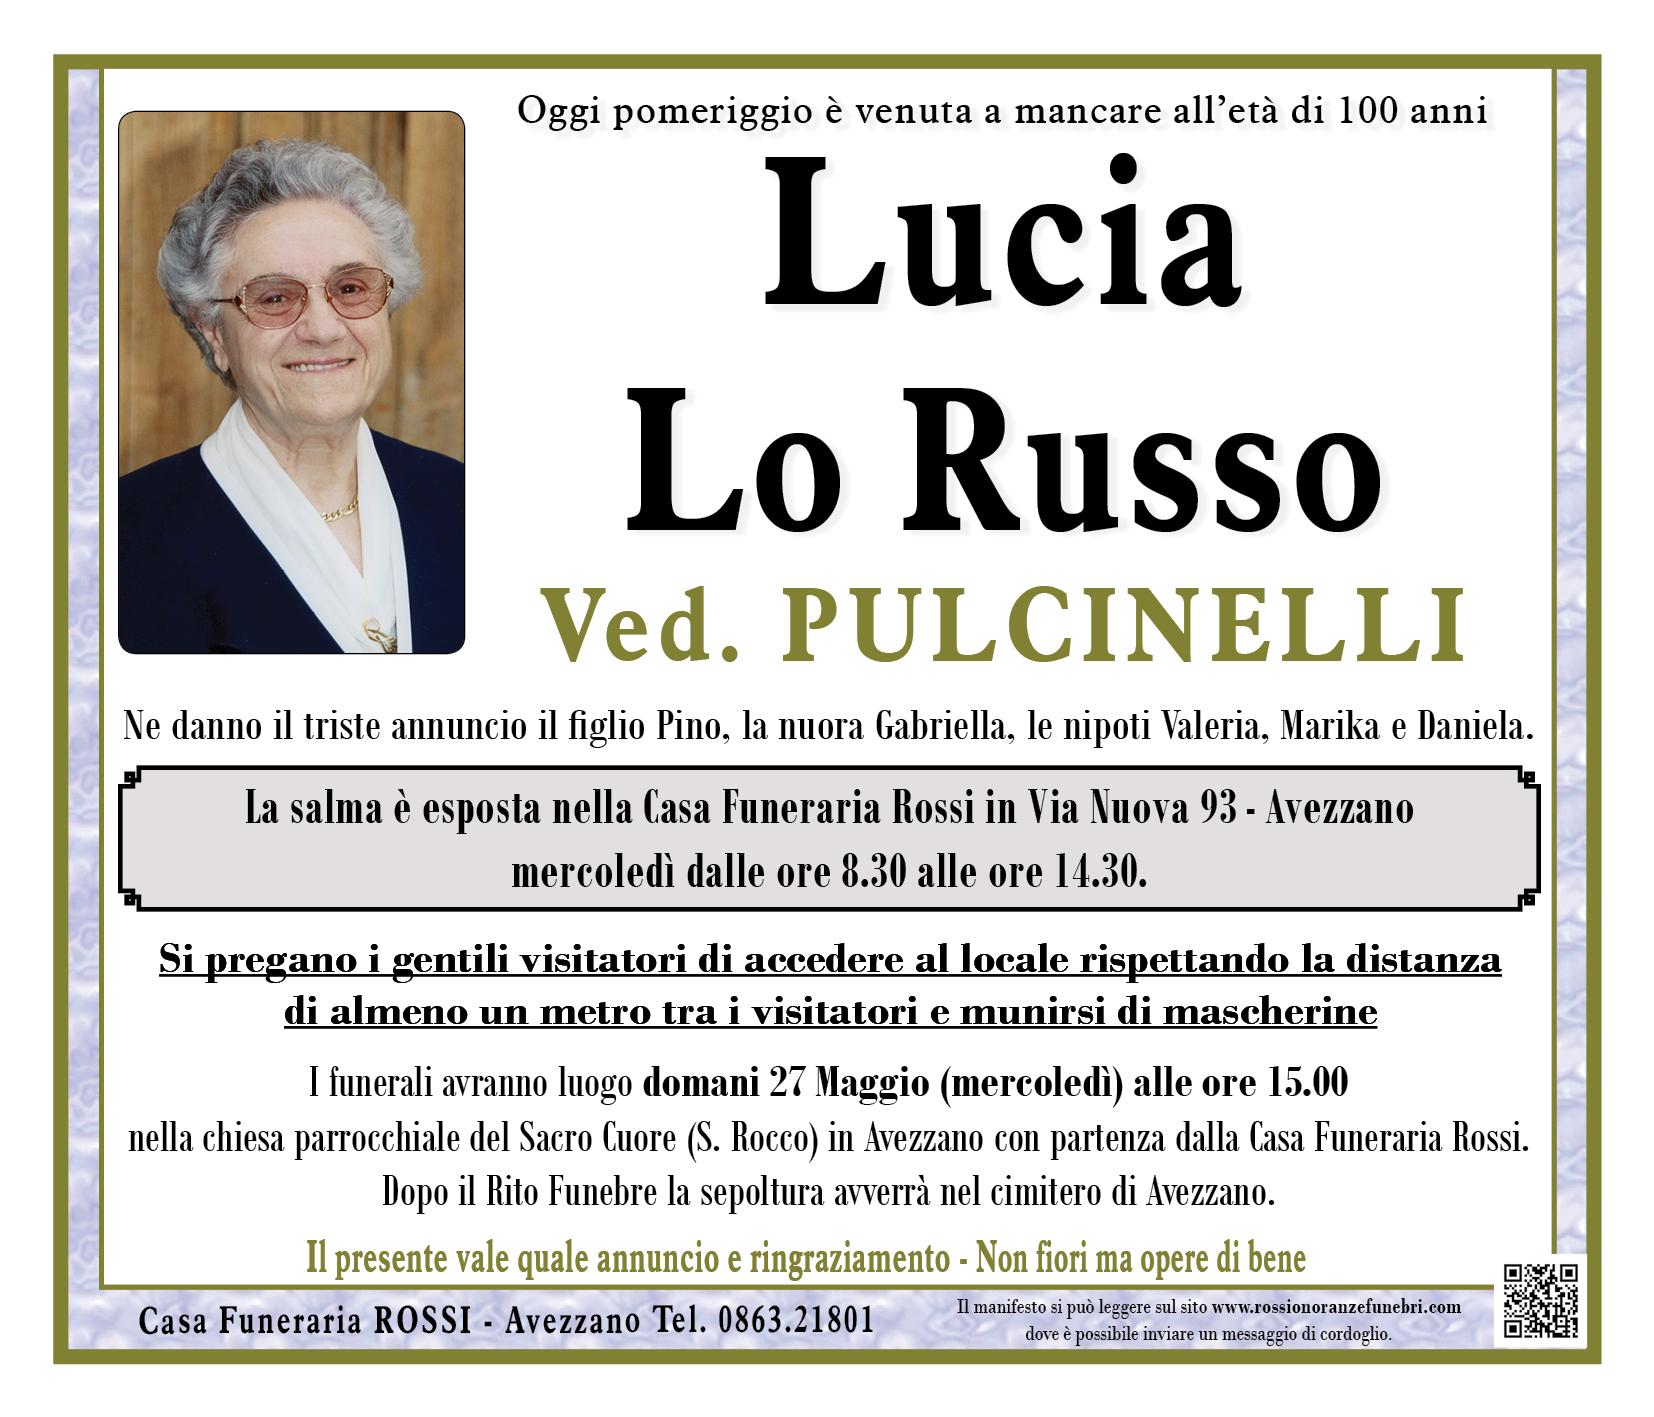 Lucia Lo Russo